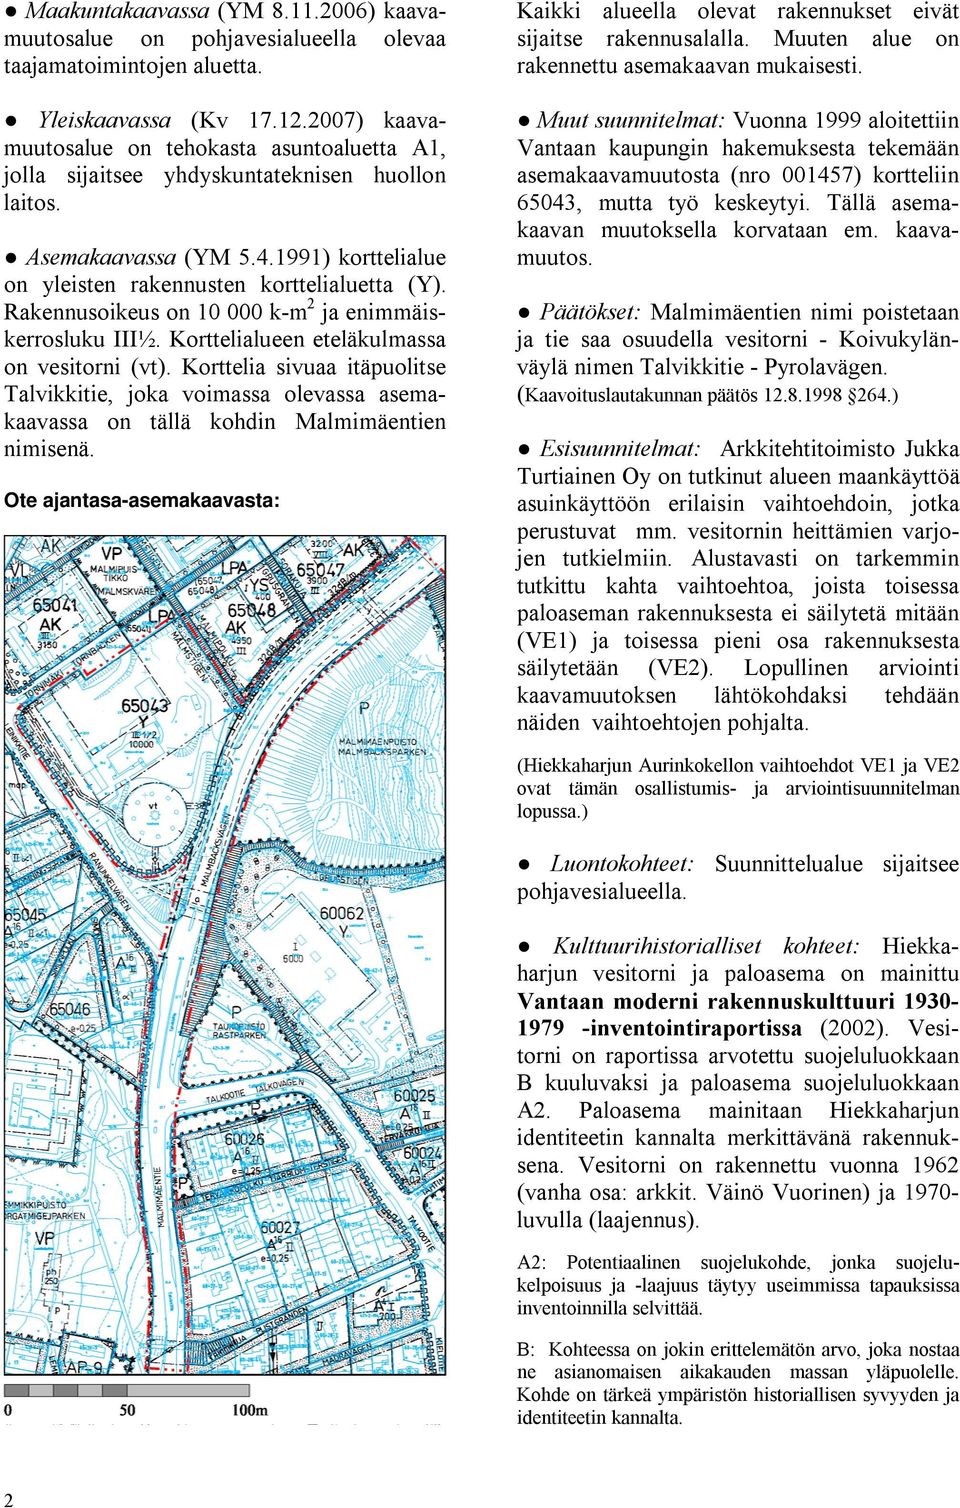 Muut suunnitelmat: Vuonna 1999 aloitettiin Vantaan kaupungin hakemuksesta tekemään asemakaavamuutosta (nro 001457) kortteliin 65043, mutta työ keskeytyi. Tällä asemakaavan muutoksella korvataan em.